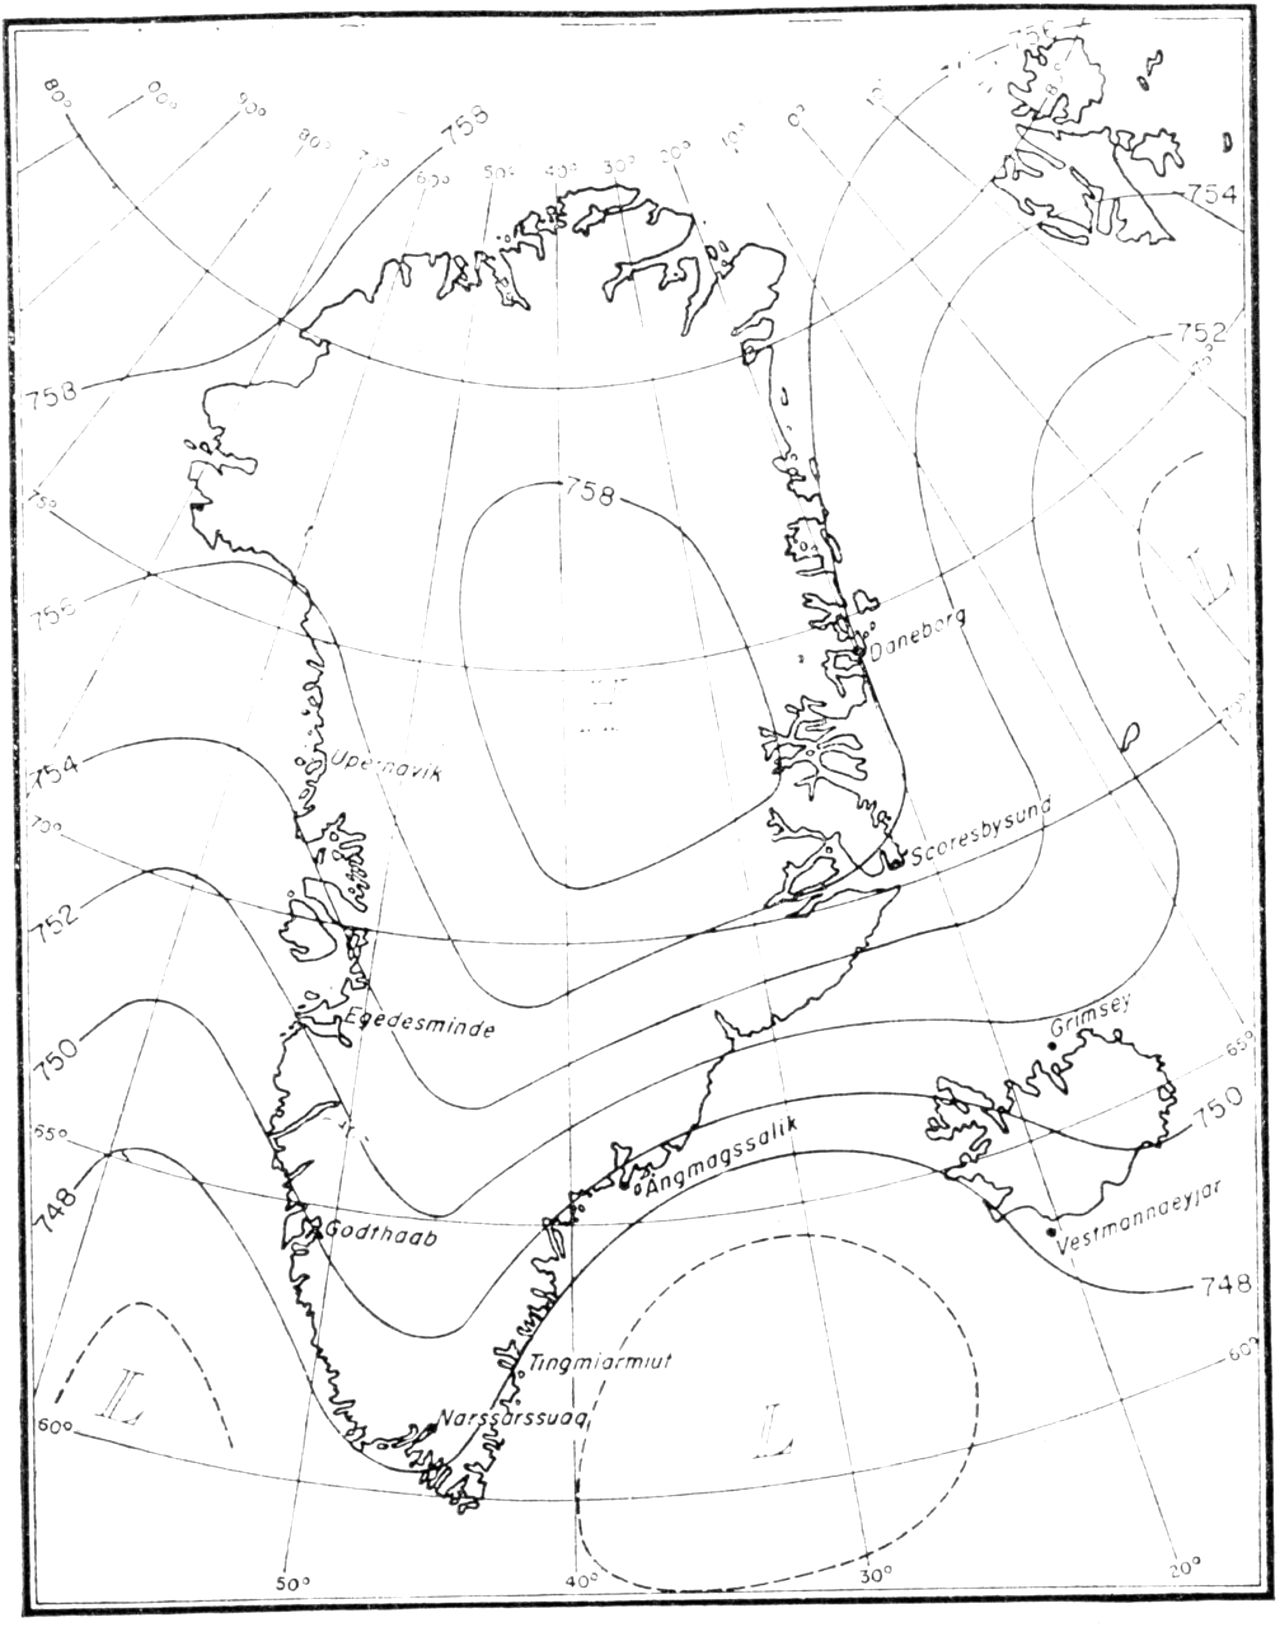 (Kort). Isobarkort over Grønland for januar på basis af senest tilgængelige observationer. (Ingolf Sestoft).